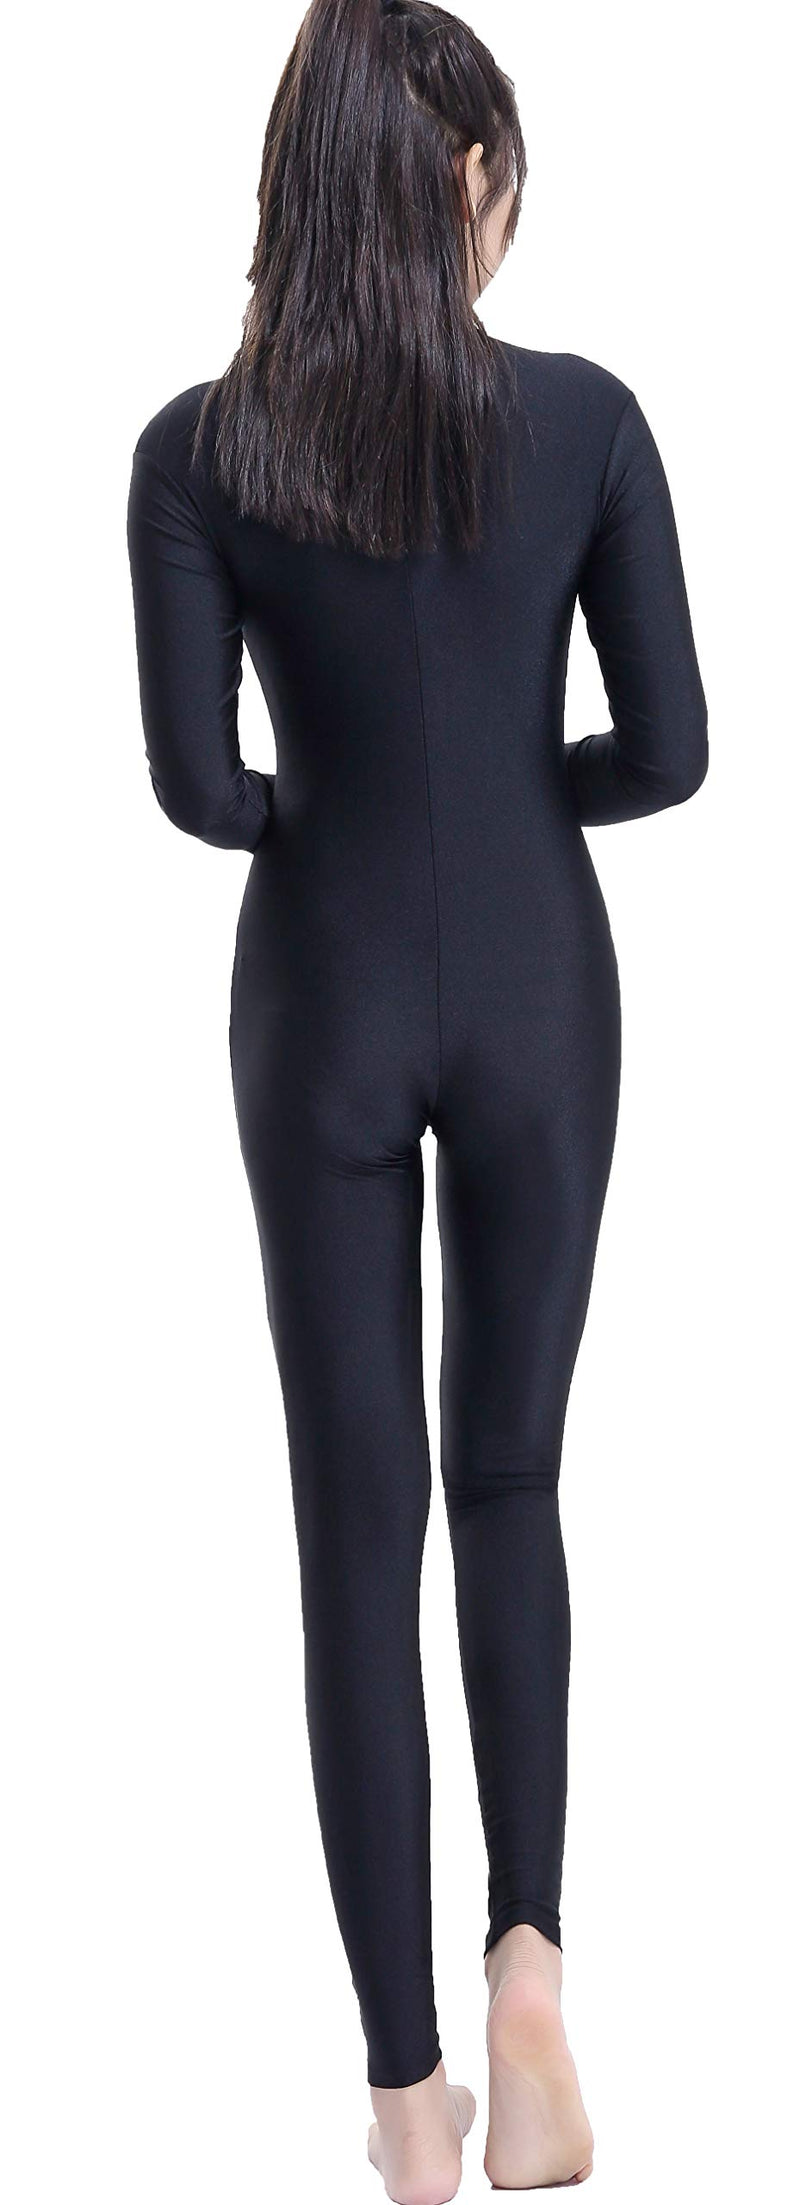 [AUSTRALIA] - Speerise Adult Spandex Long Sleeve Turtleneck Unitard Bodysuit Black X-Large 